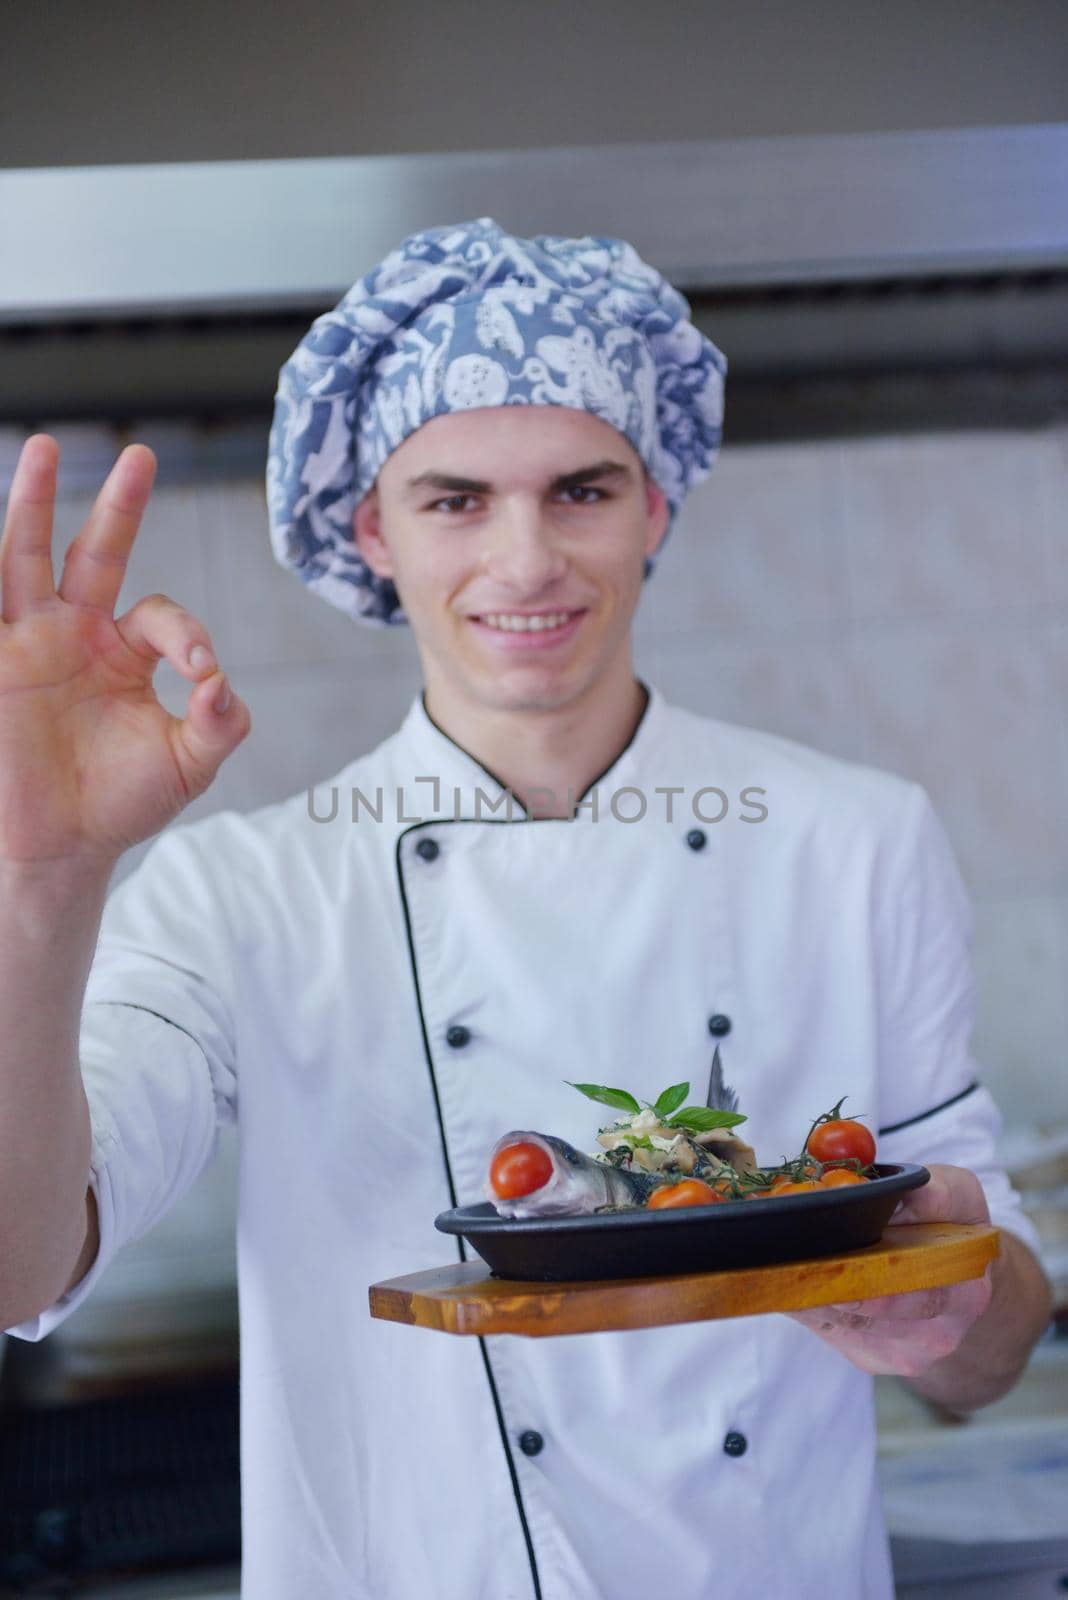 chef preparing food by dotshock